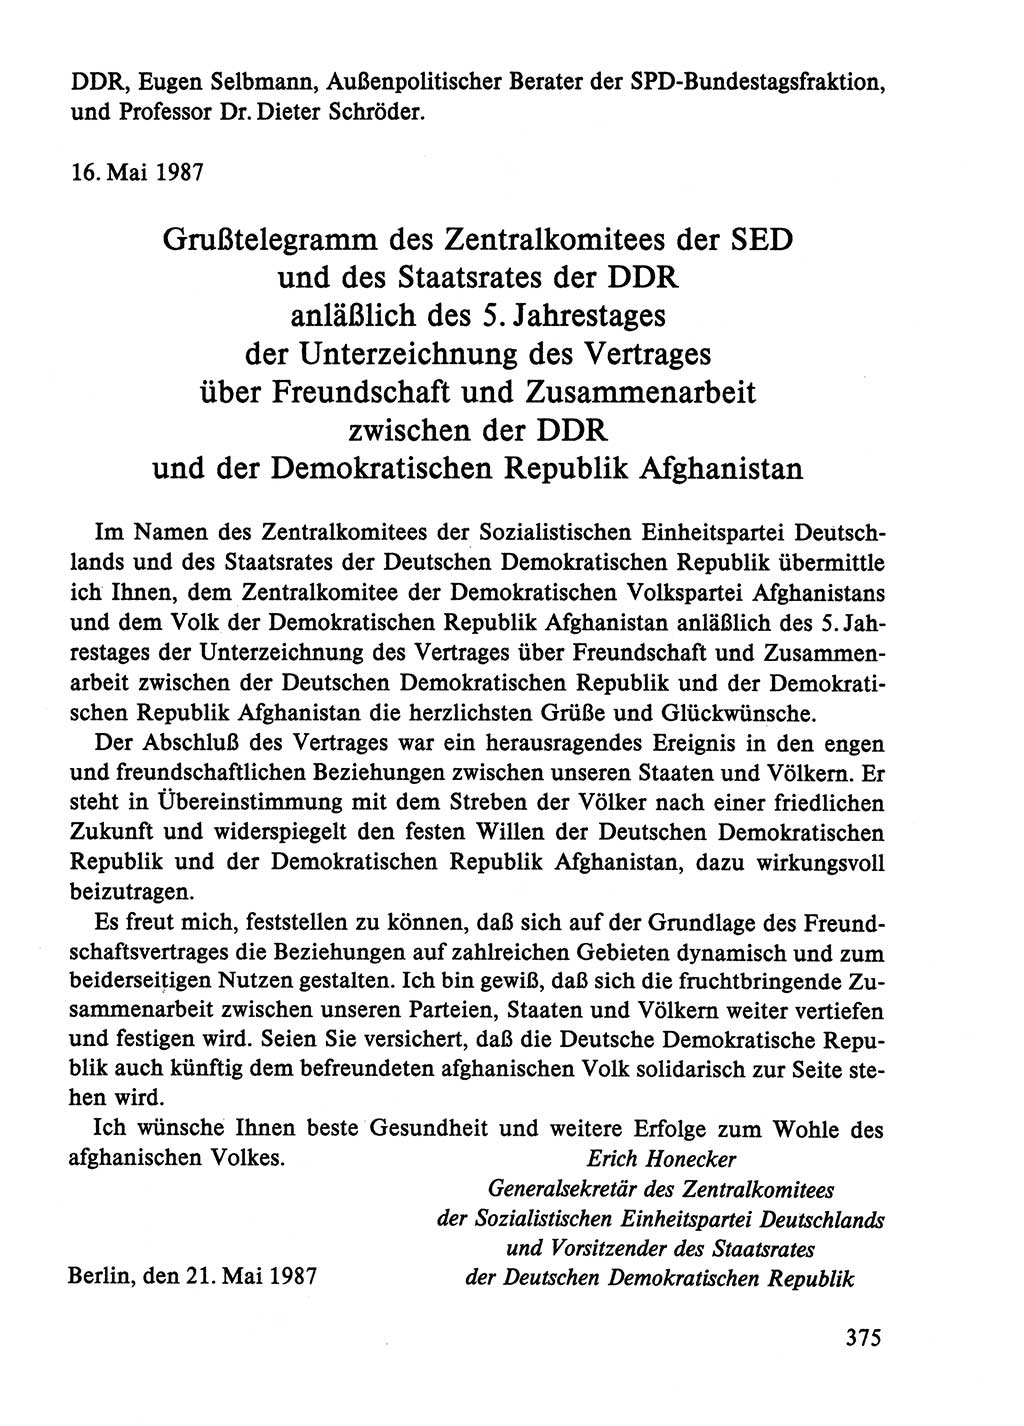 Dokumente der Sozialistischen Einheitspartei Deutschlands (SED) [Deutsche Demokratische Republik (DDR)] 1986-1987, Seite 375 (Dok. SED DDR 1986-1987, S. 375)